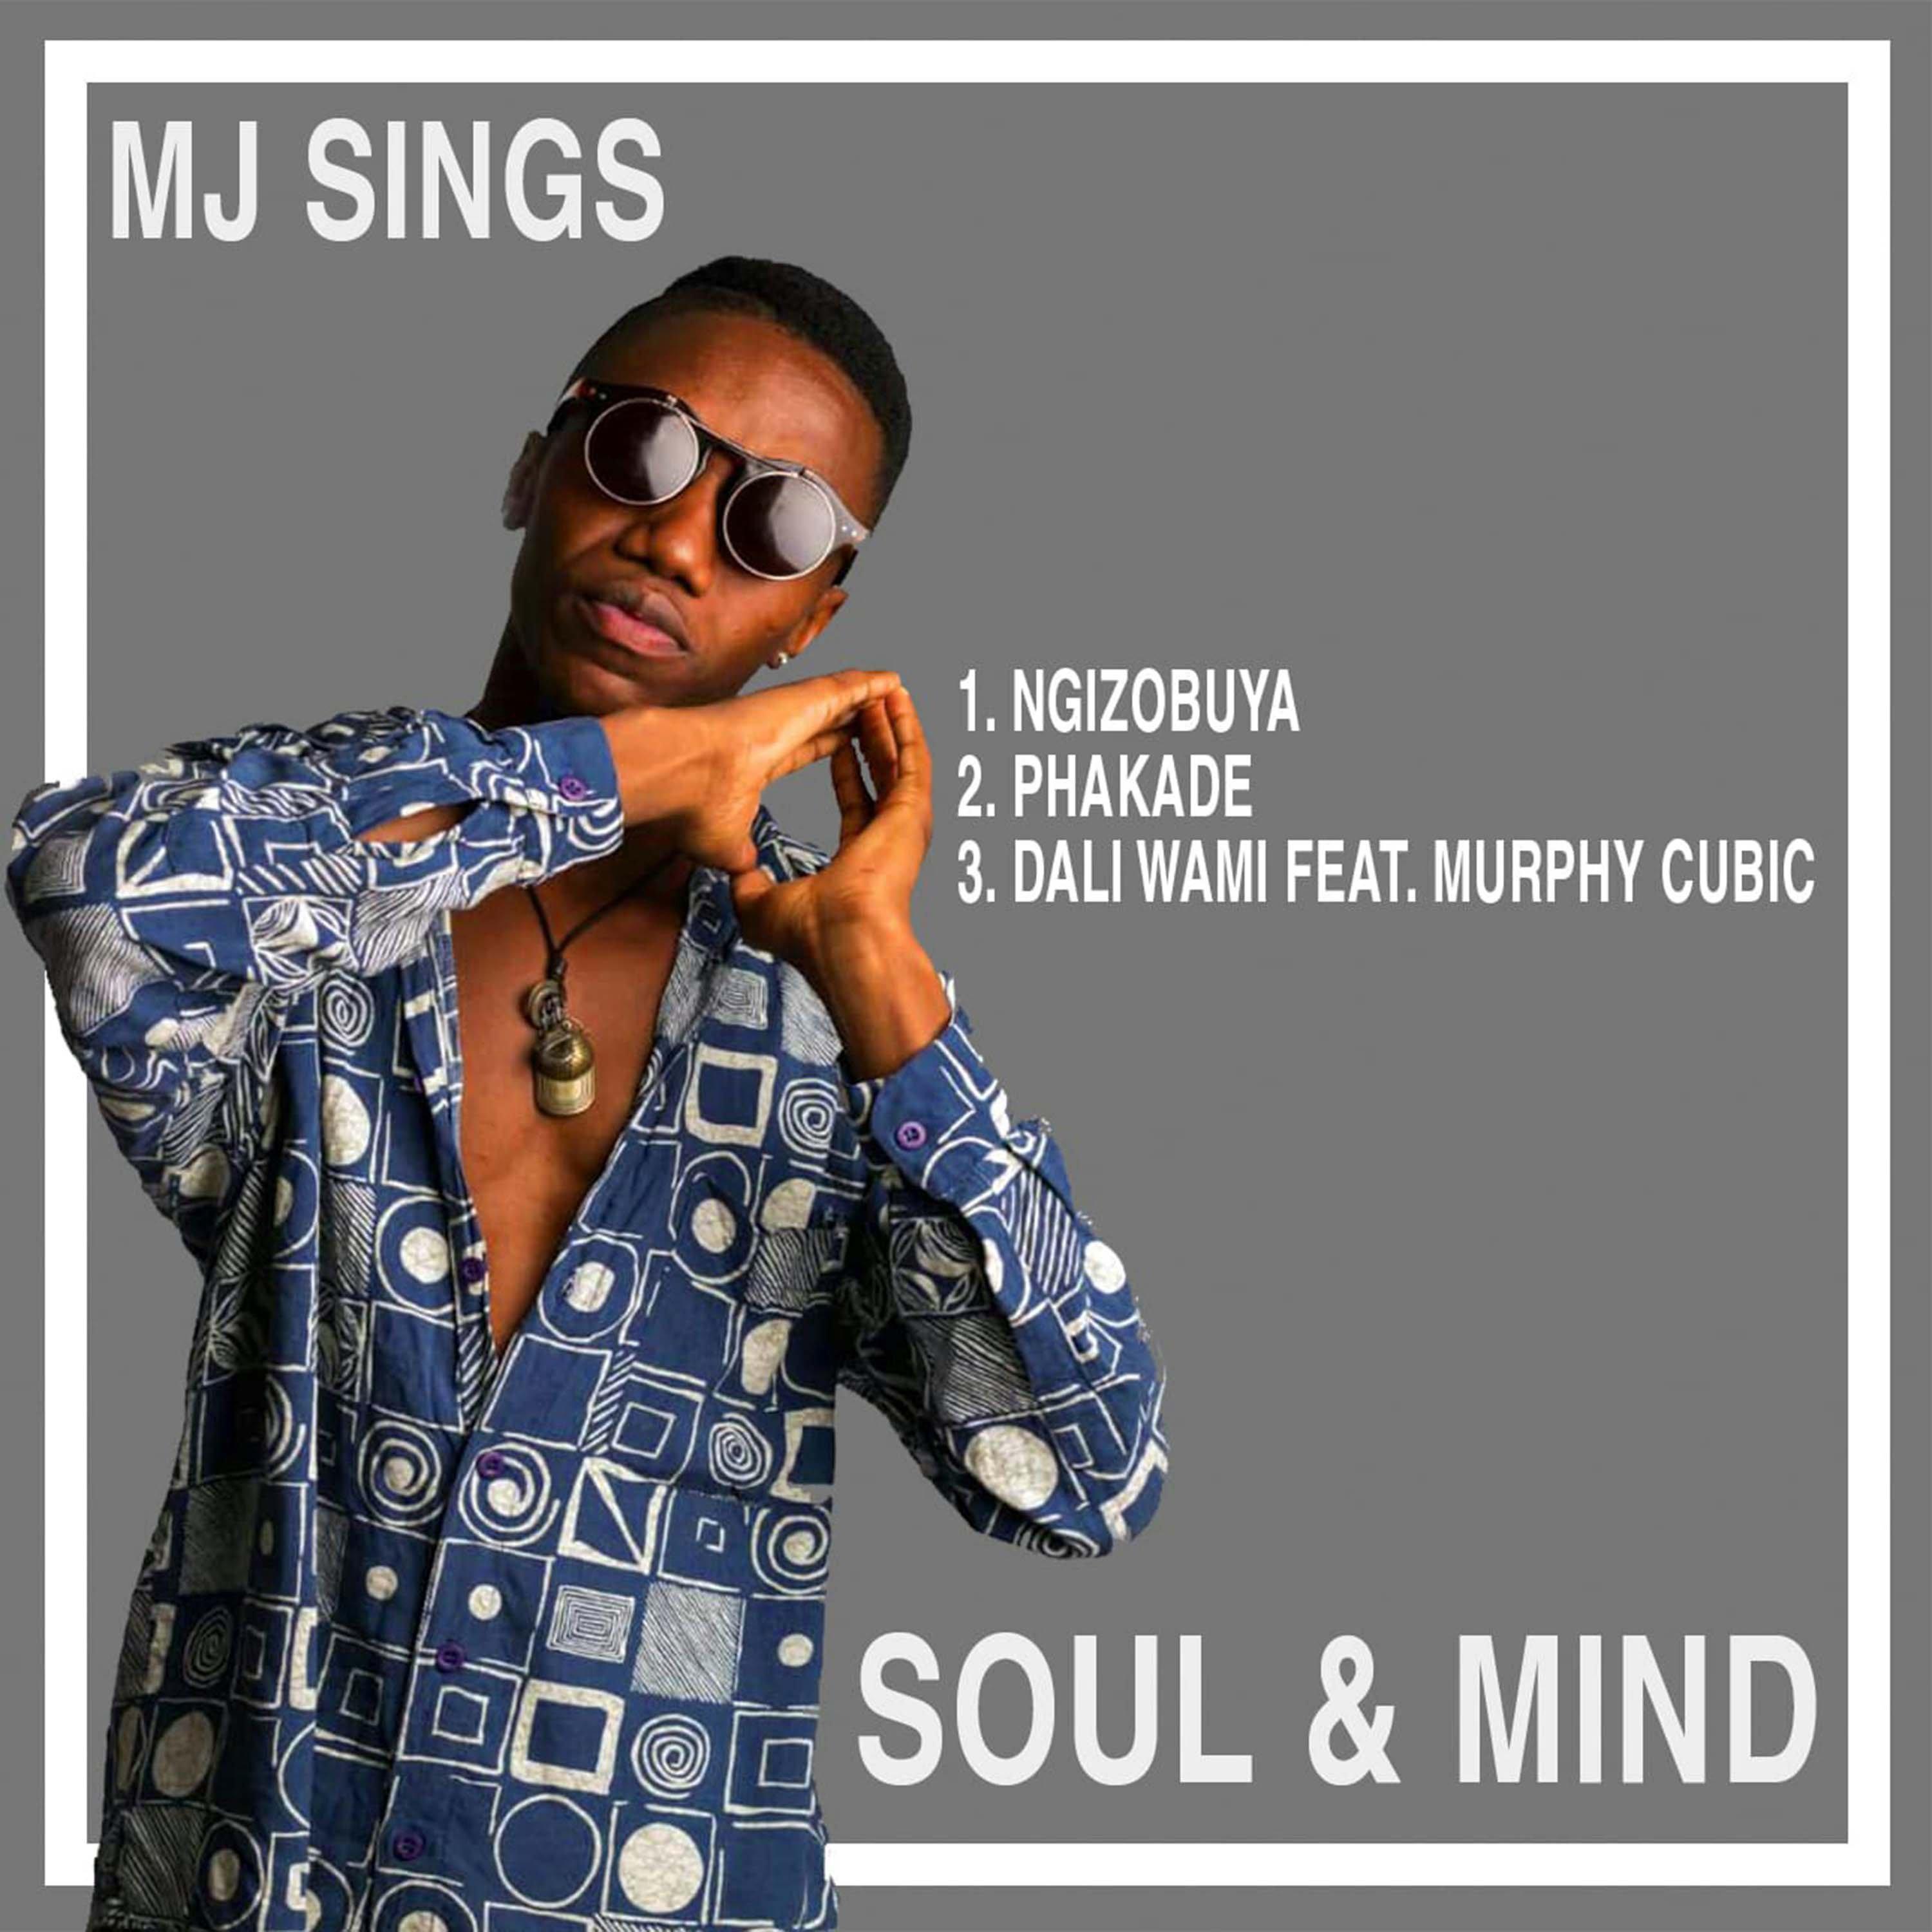 MJ Sings - Ngizobuya